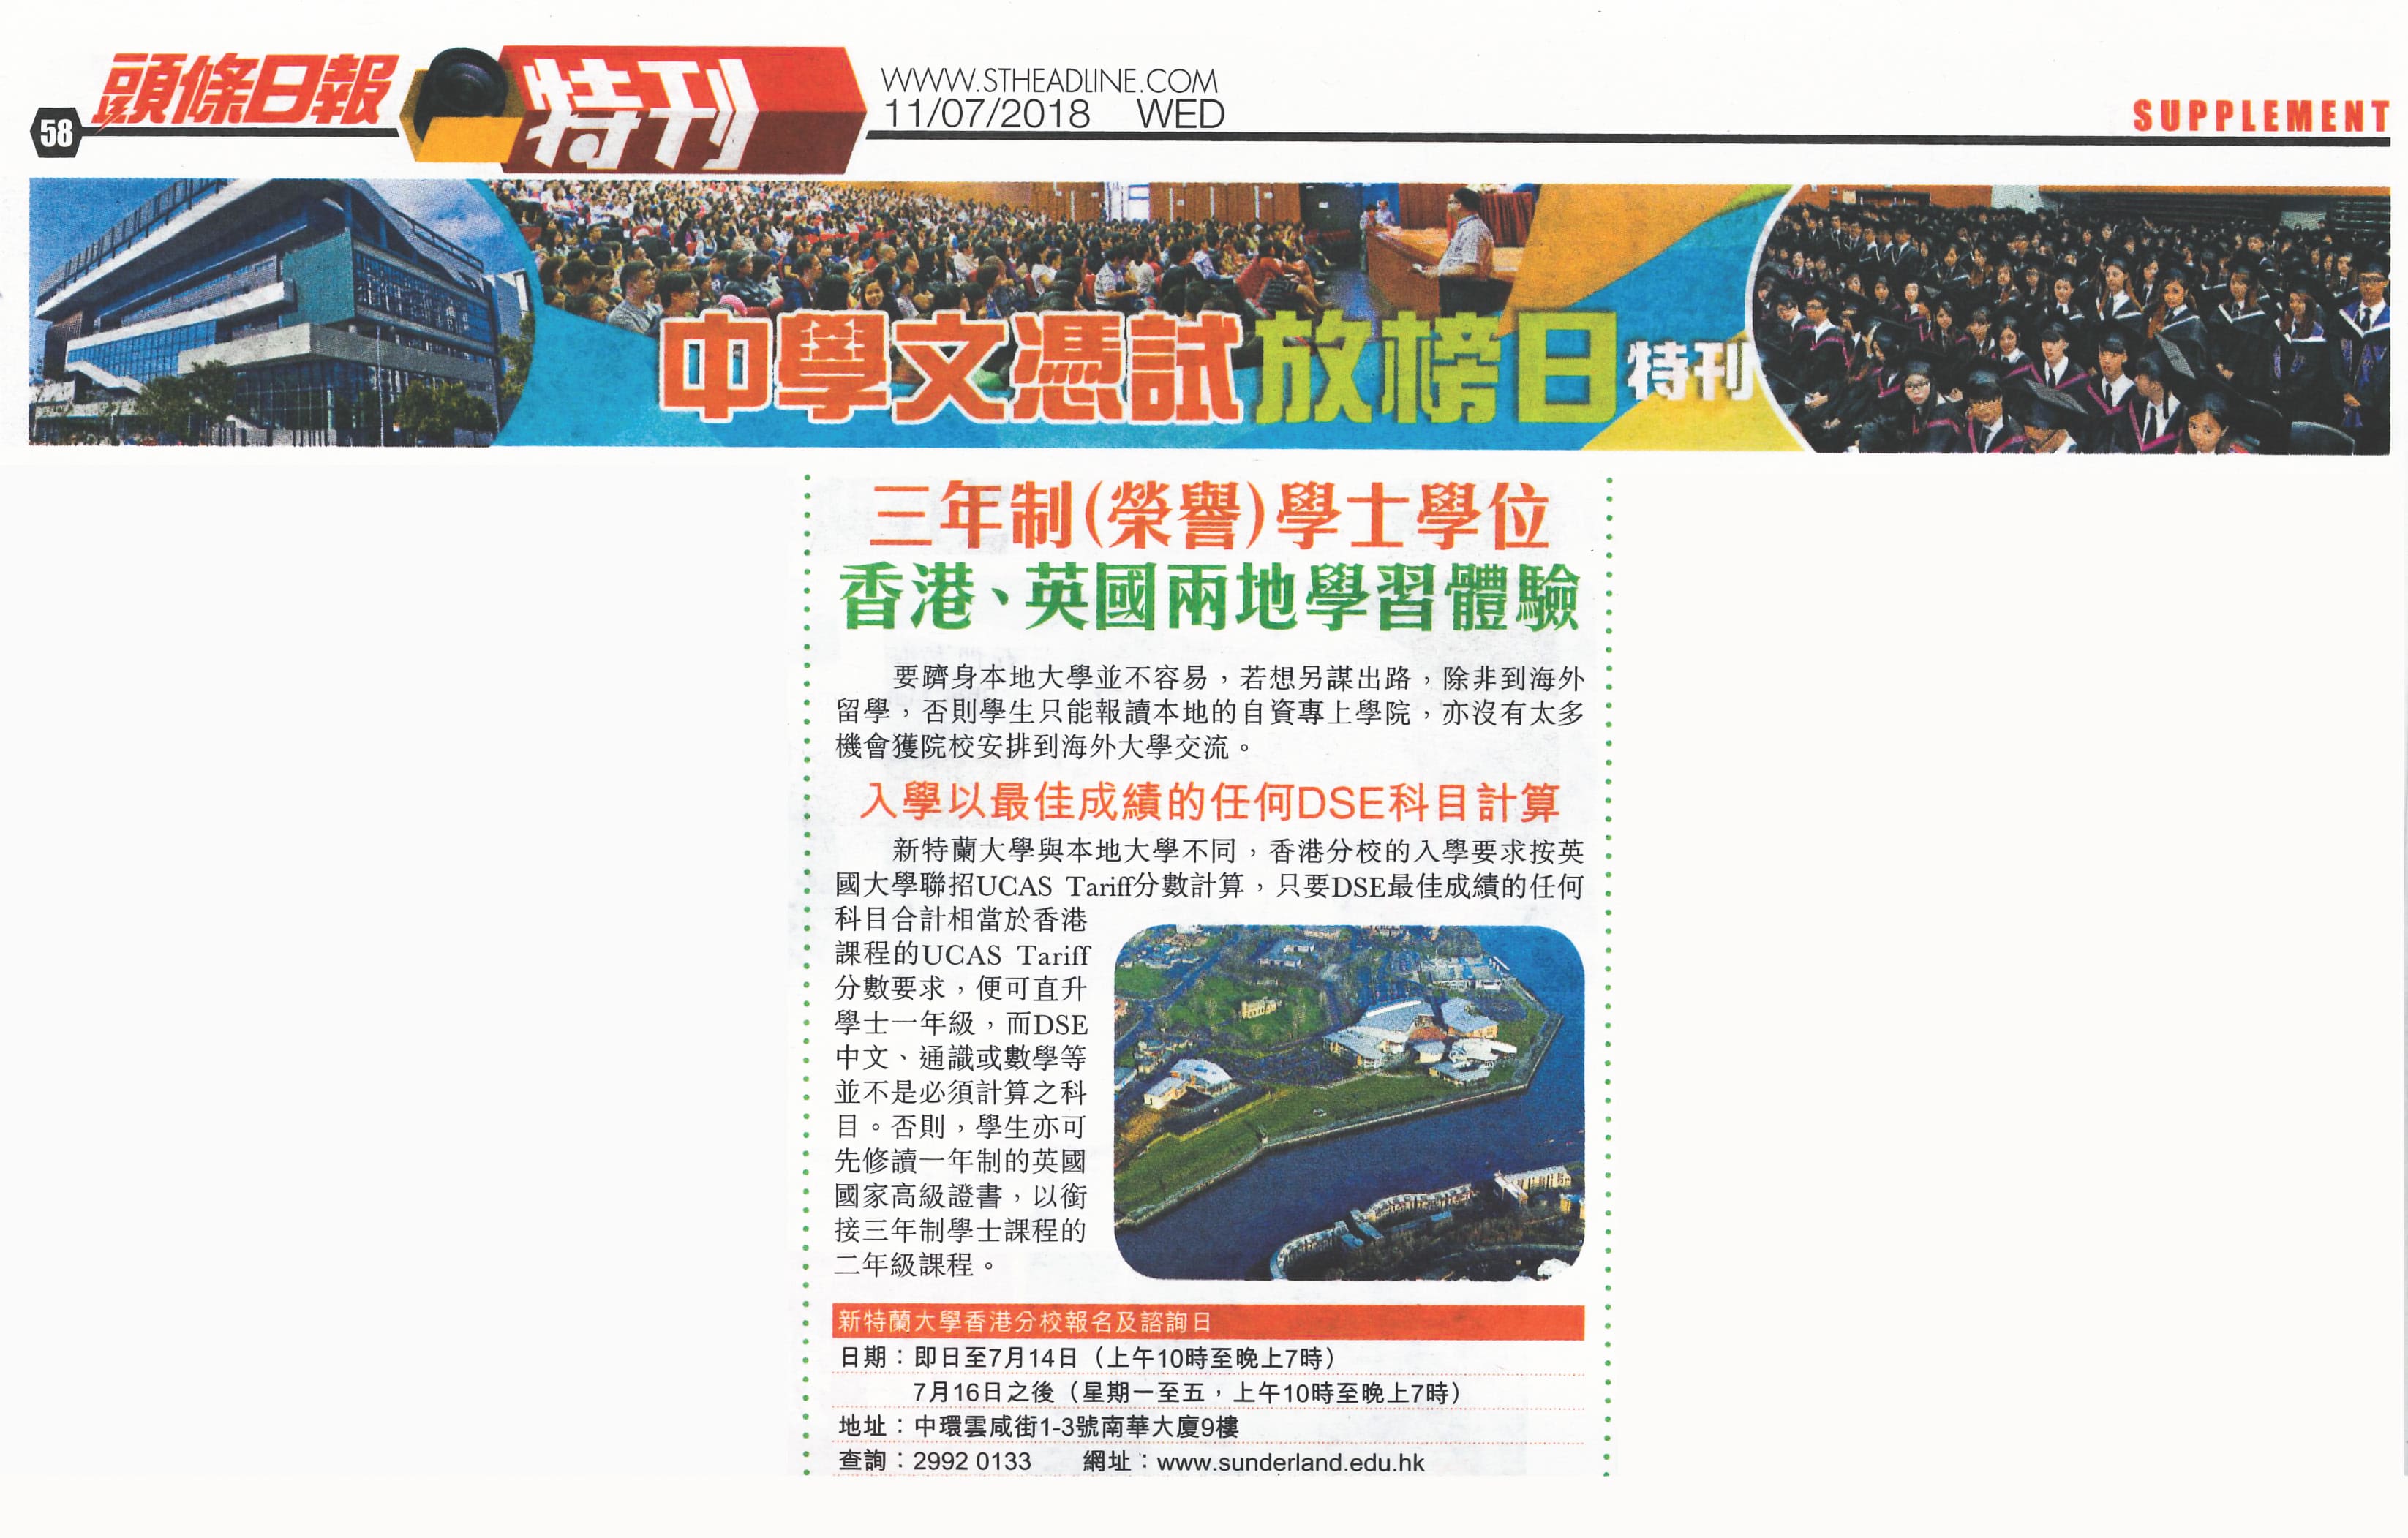 sunderland-hk-uoshk-headline-daily-180711